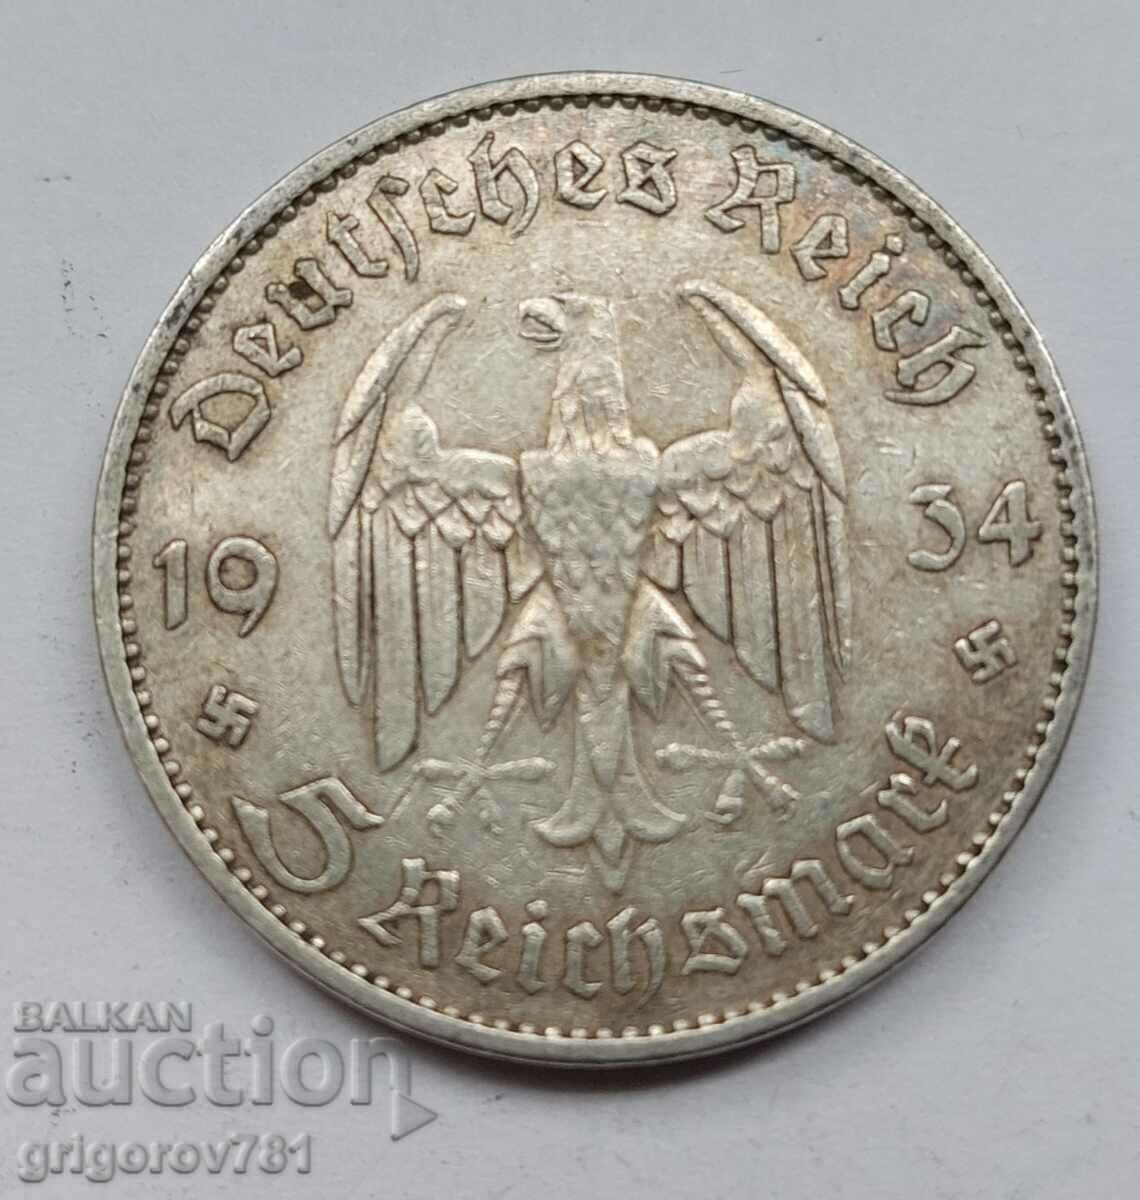 5 Mark Silver Γερμανία 1934 A III Reich Silver Coin #4